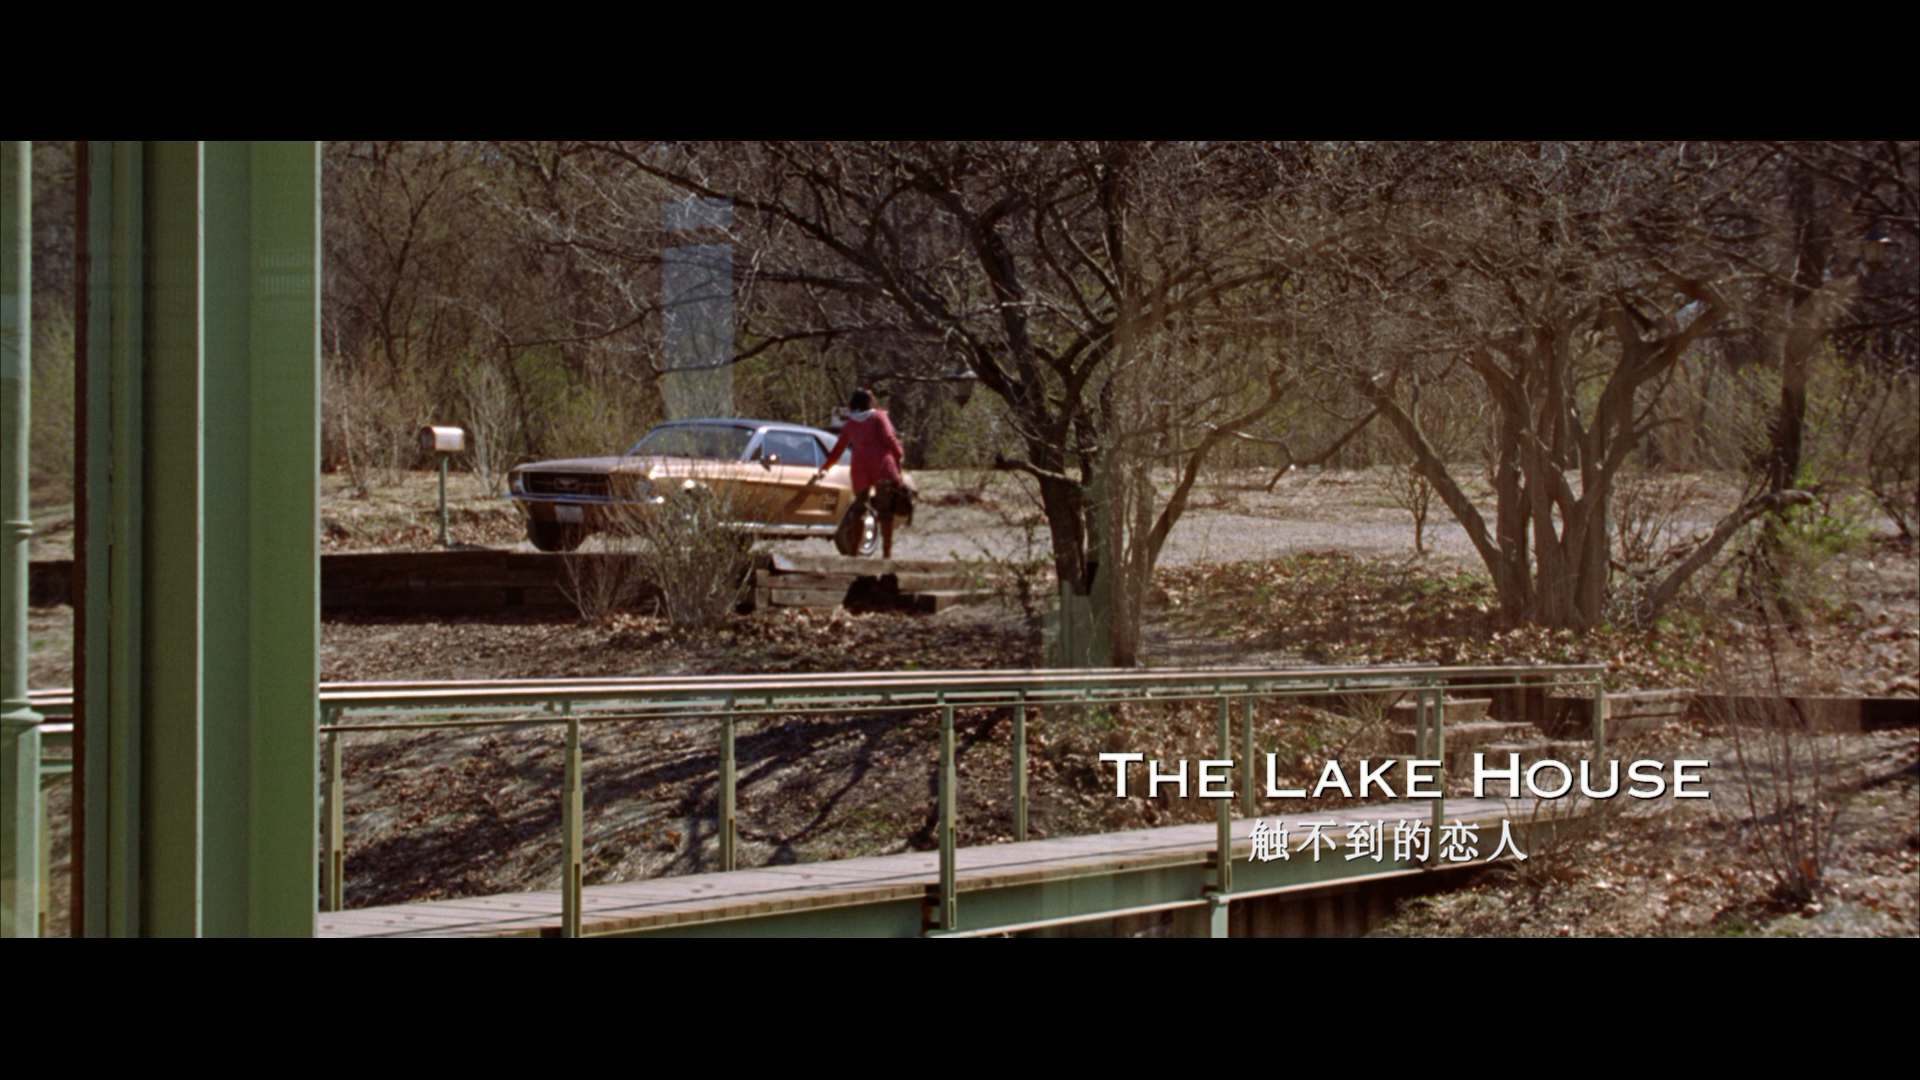 触不到的恋人 / 情流恋屋 / 湖边小屋 日版原盘[DIY国配+国配简繁+简繁英双语字幕] The Lake House 2006 1080p JPN Blu-ray VC-1 DD5.1-IWUBEN@OurBits[12.38GB]-4.png